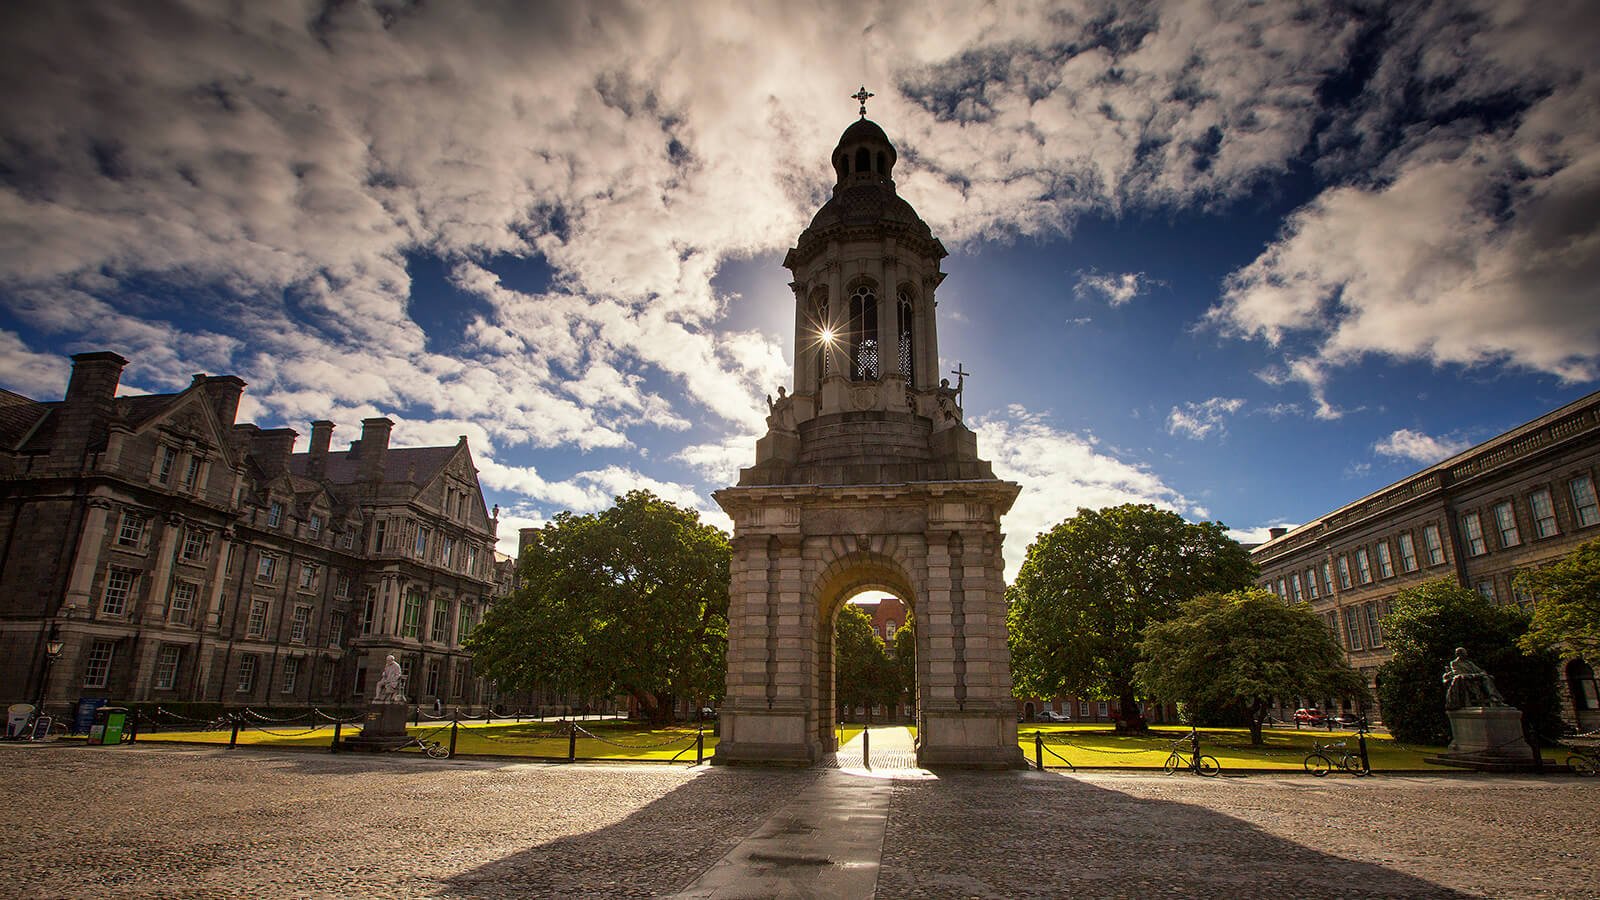 Trinity College square in Dublin